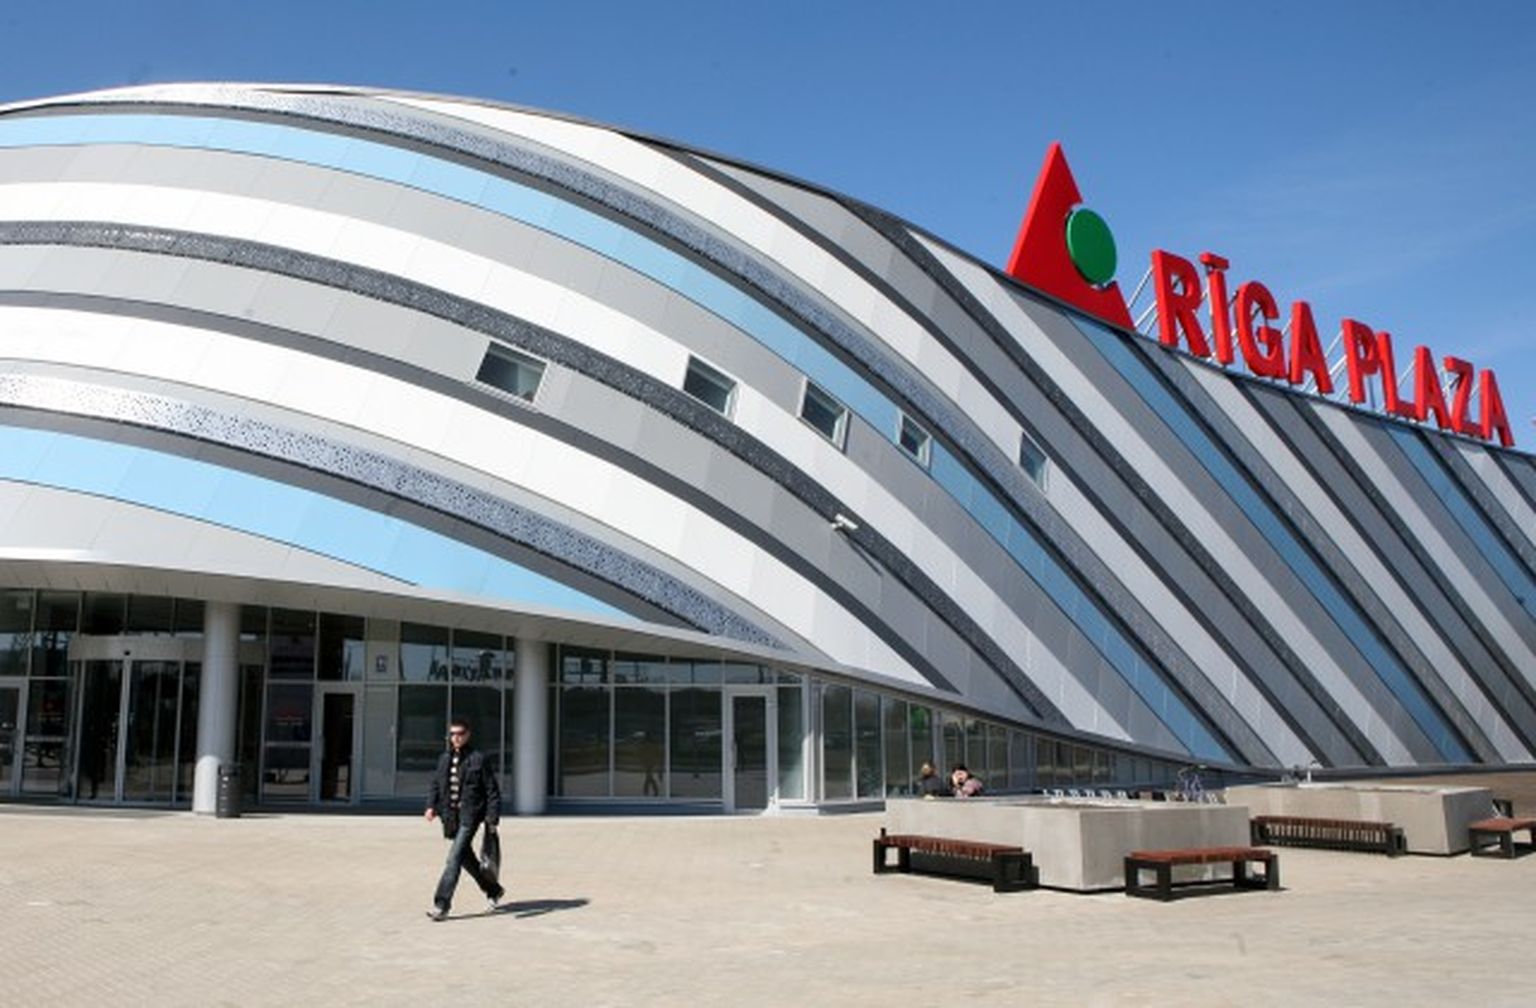 Торговый центр Rīga Plaza. Иллюстративное фото